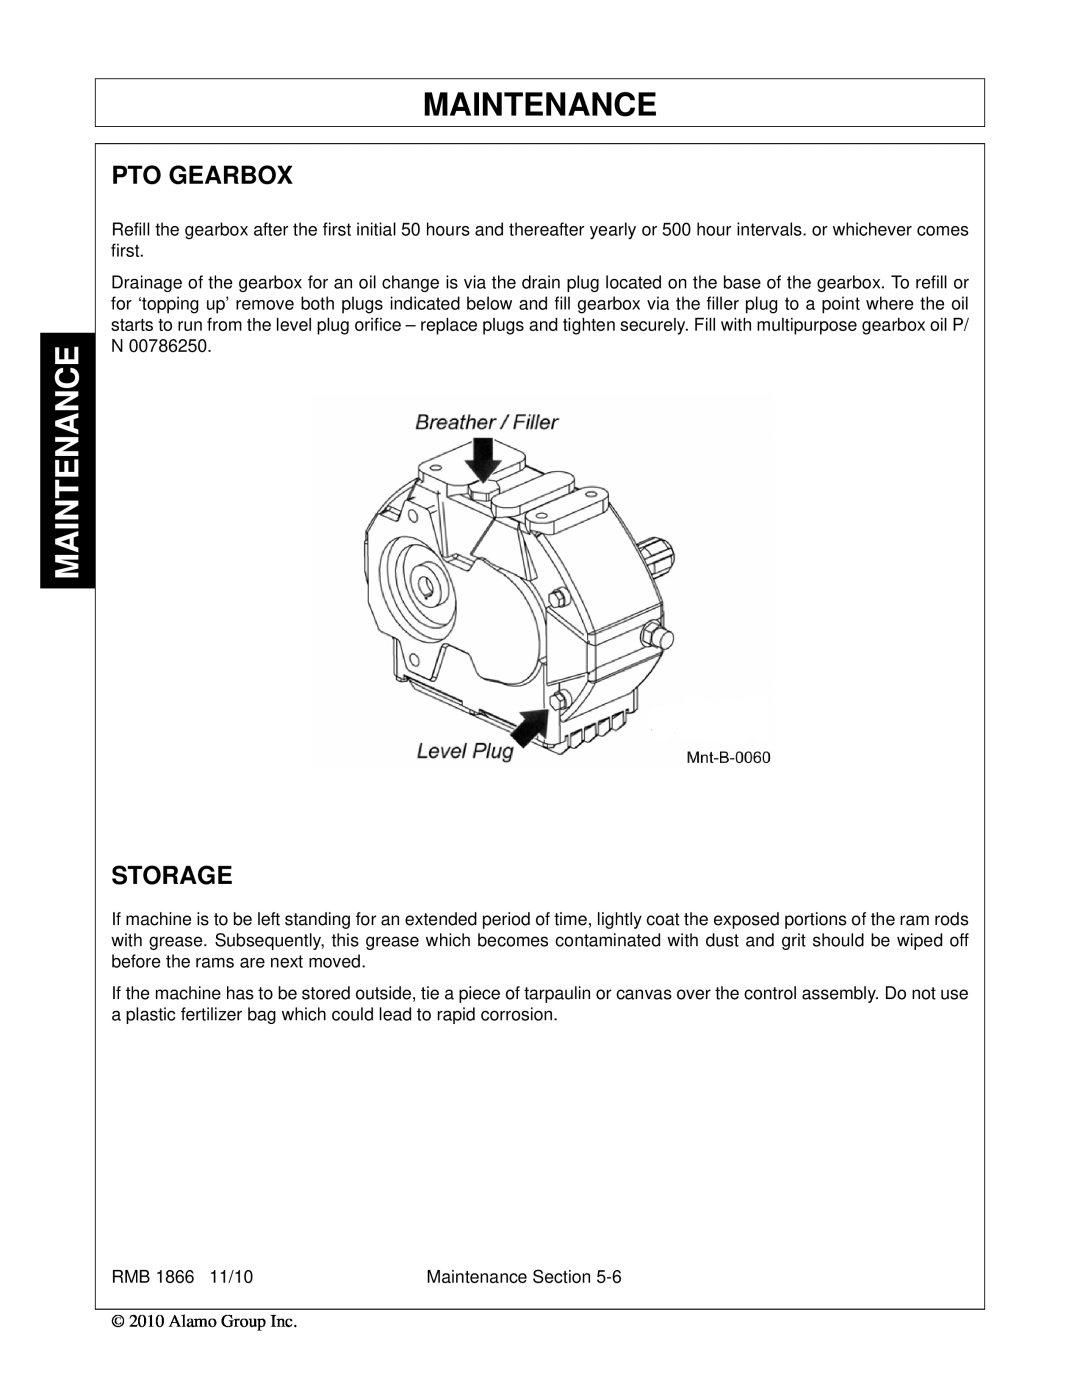 Bush Hog RMB 1865 manual Maintenance, Pto Gearbox, Storage 